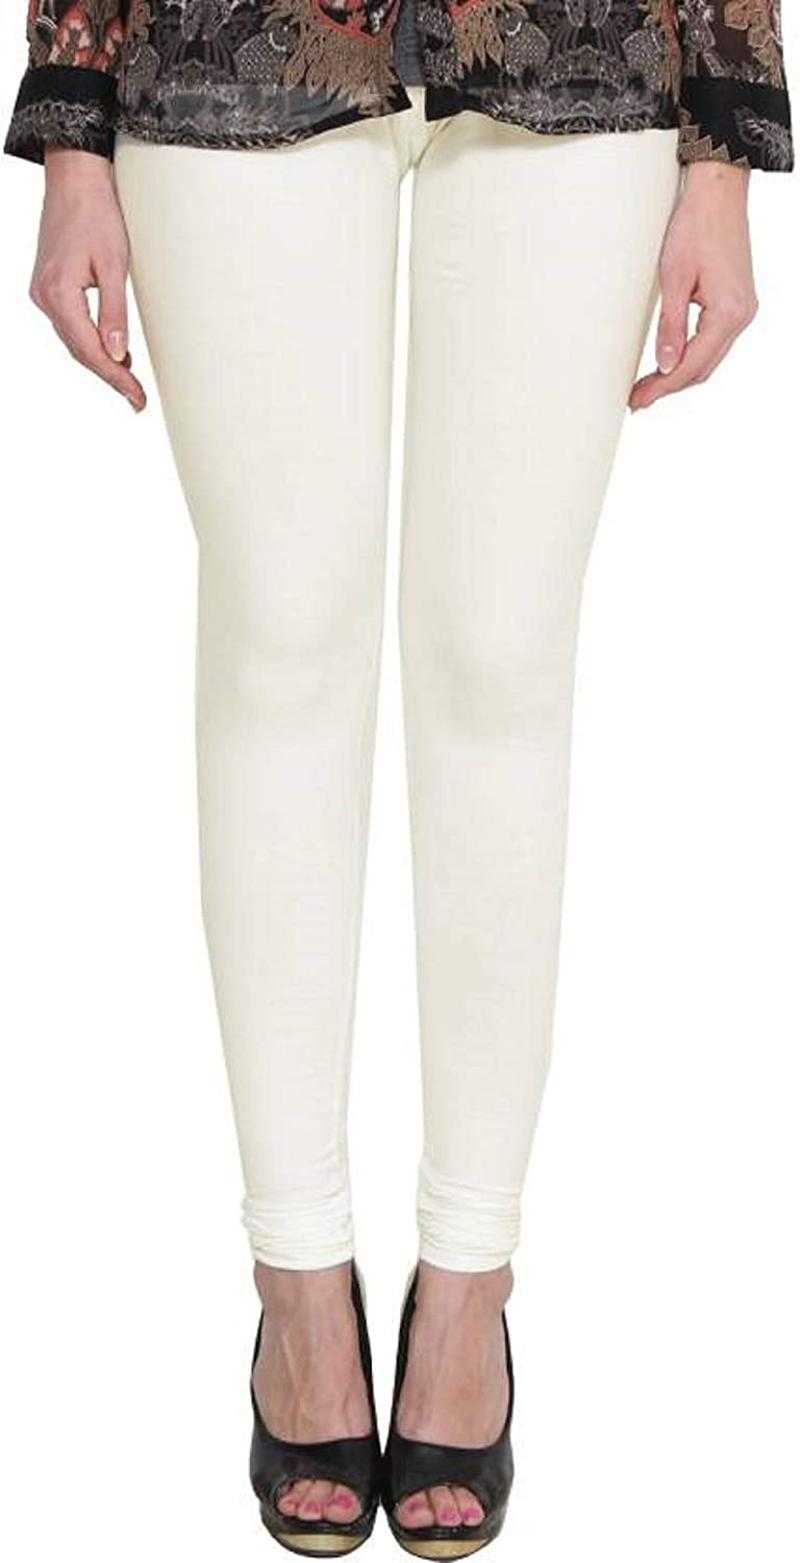 Buy Off-White Leggings for Women by LYRA Online